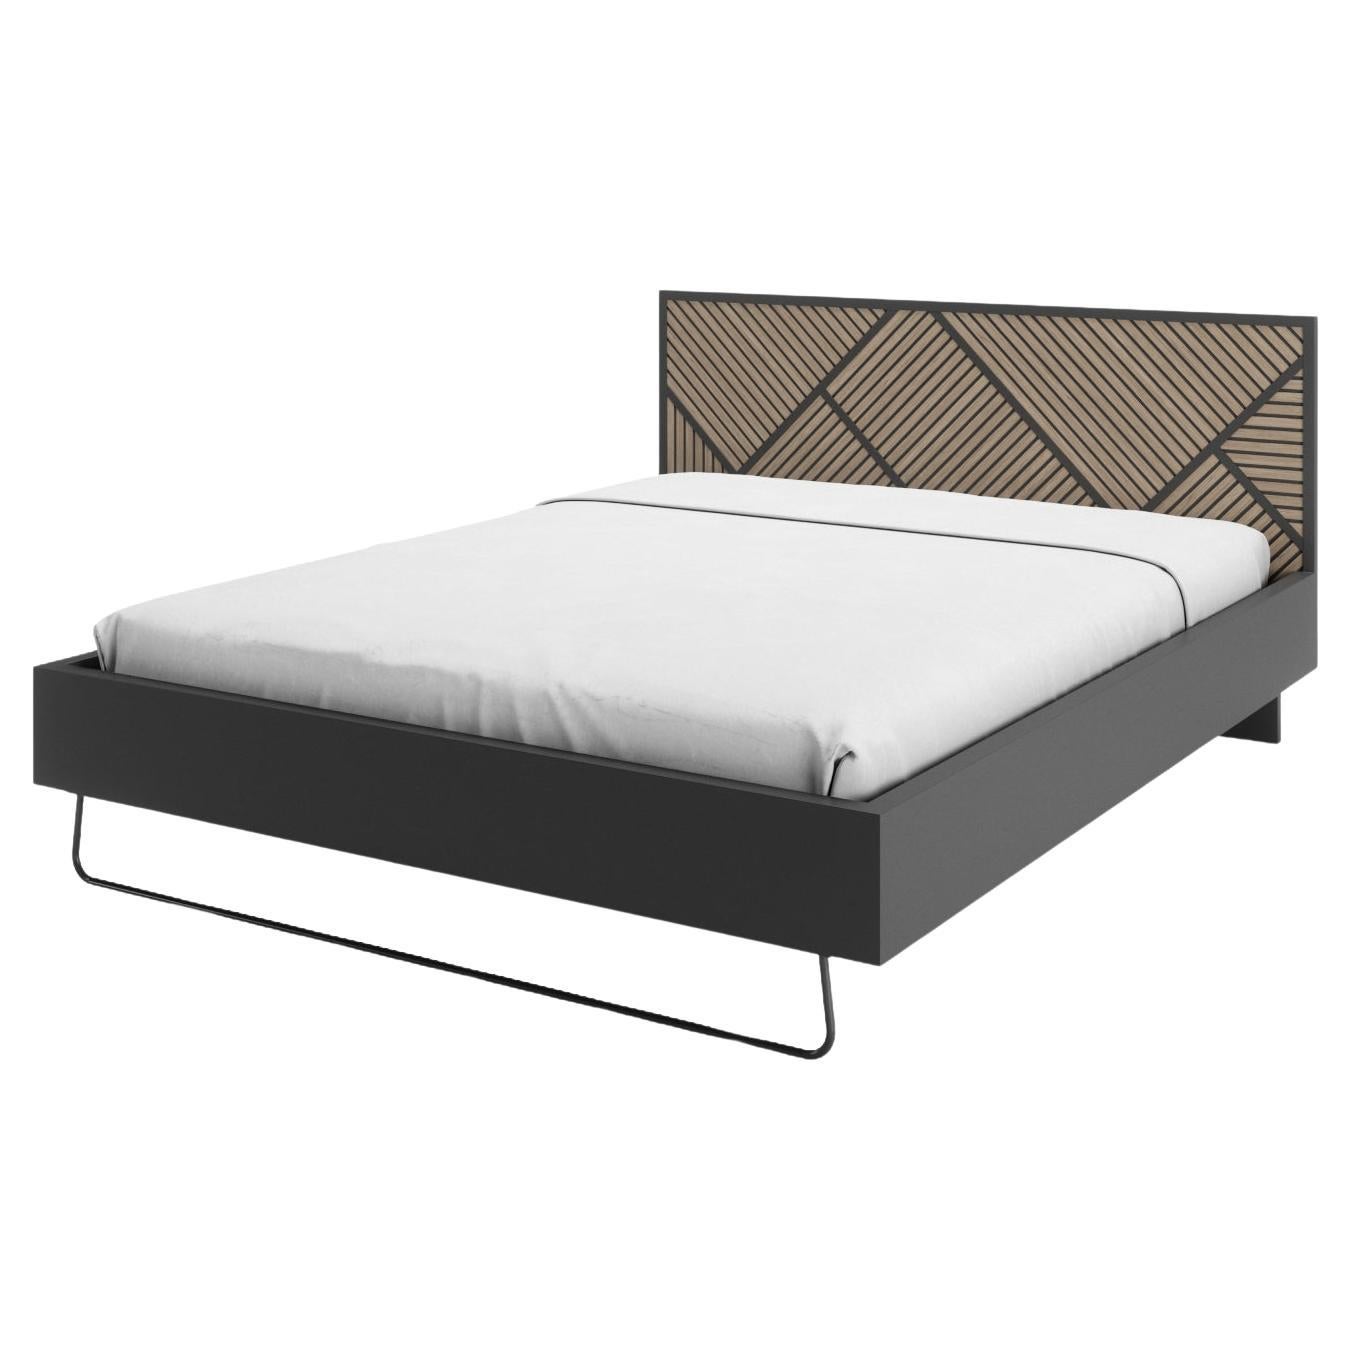 Slide-Bett mit Metallfuß für Marttresse im Angebot